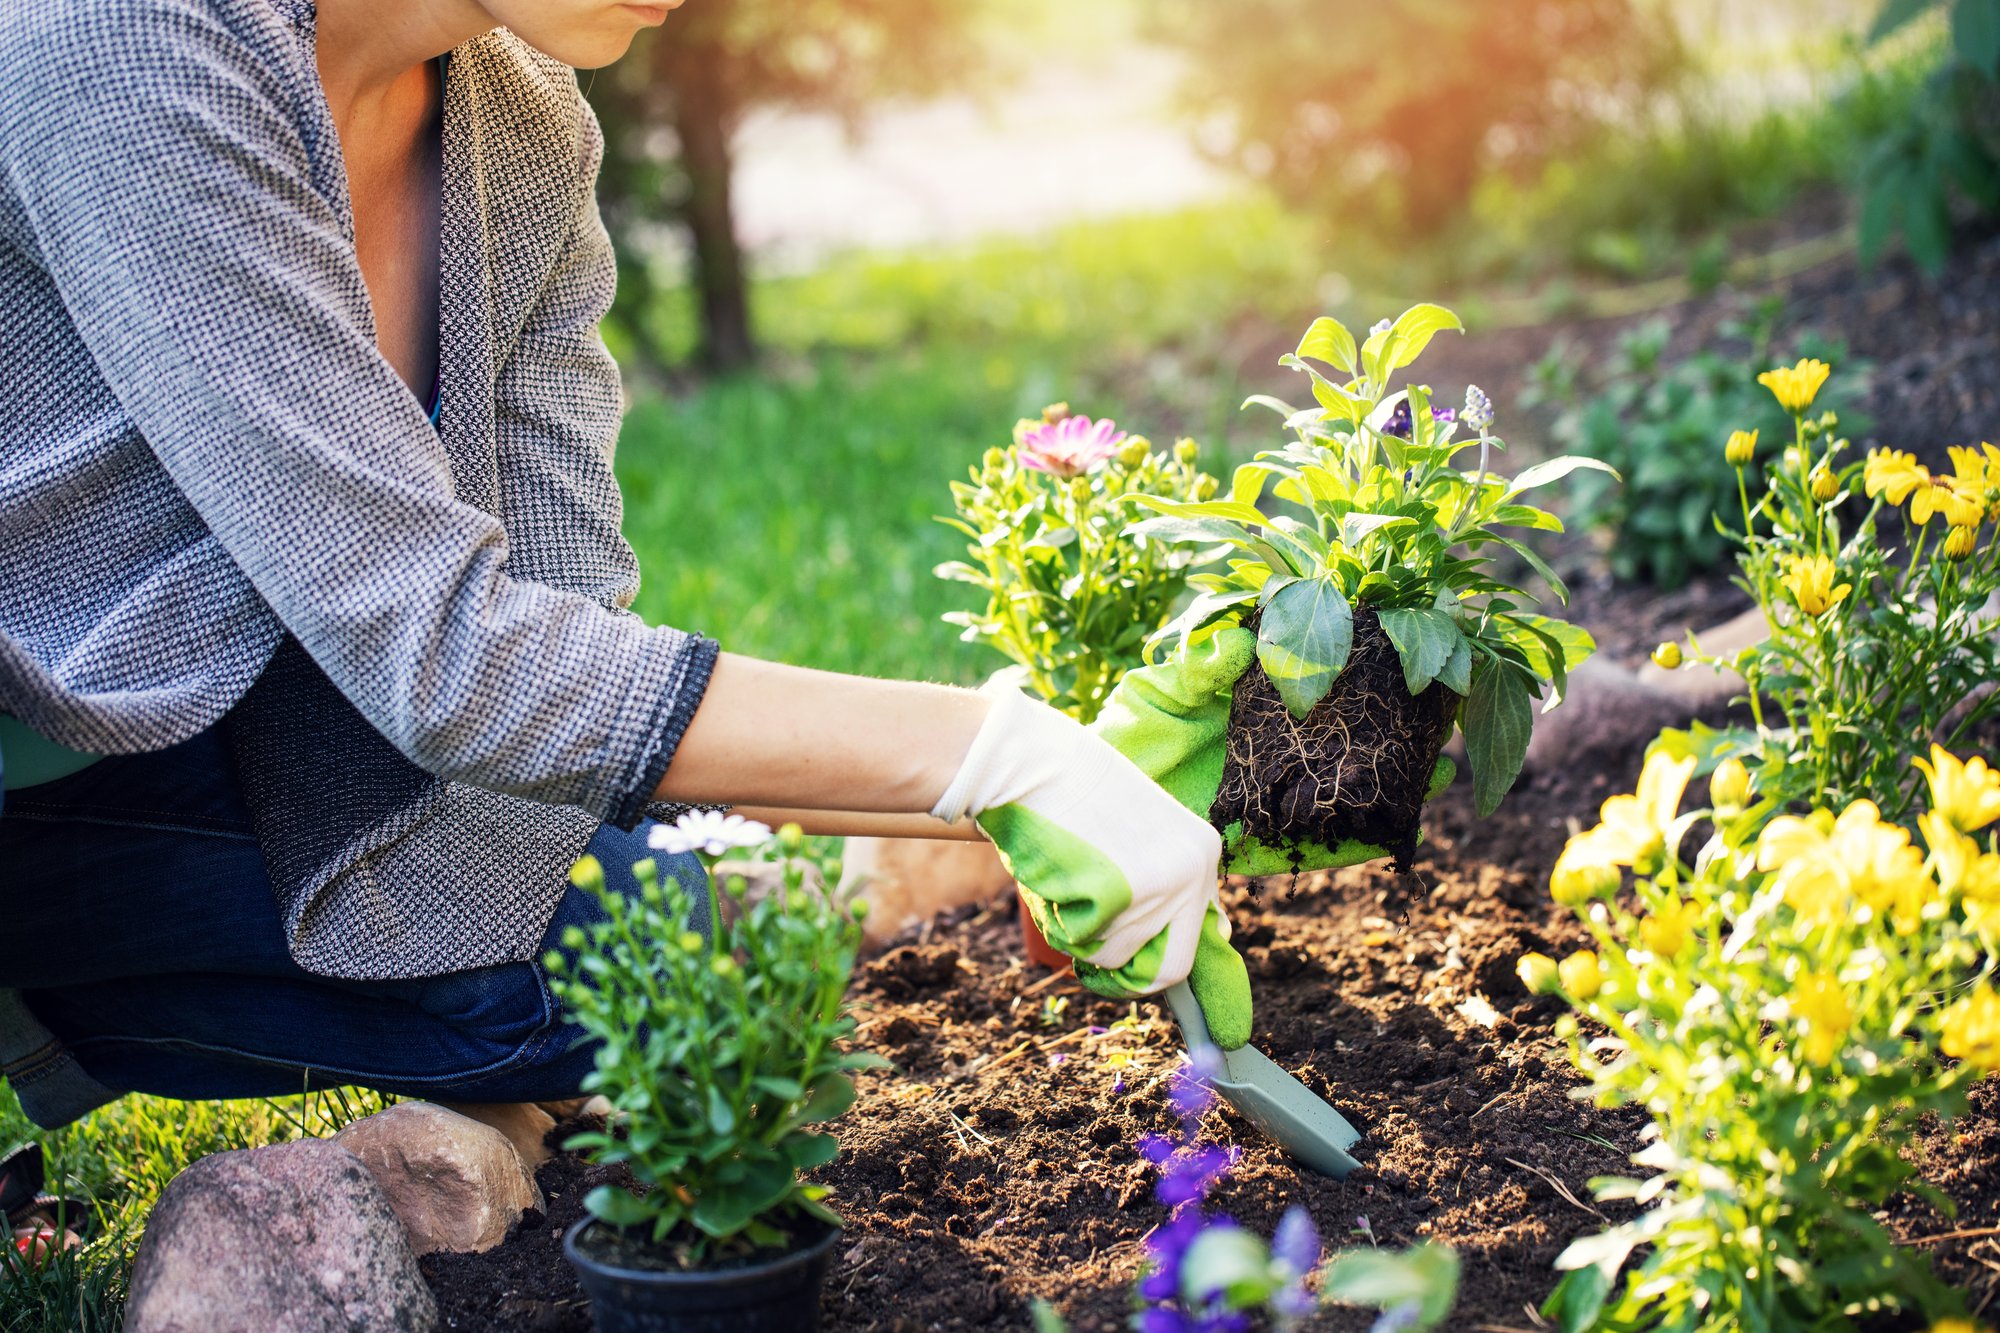 Jardiner aujourd’hui : état des lieux avec “4 saisons”